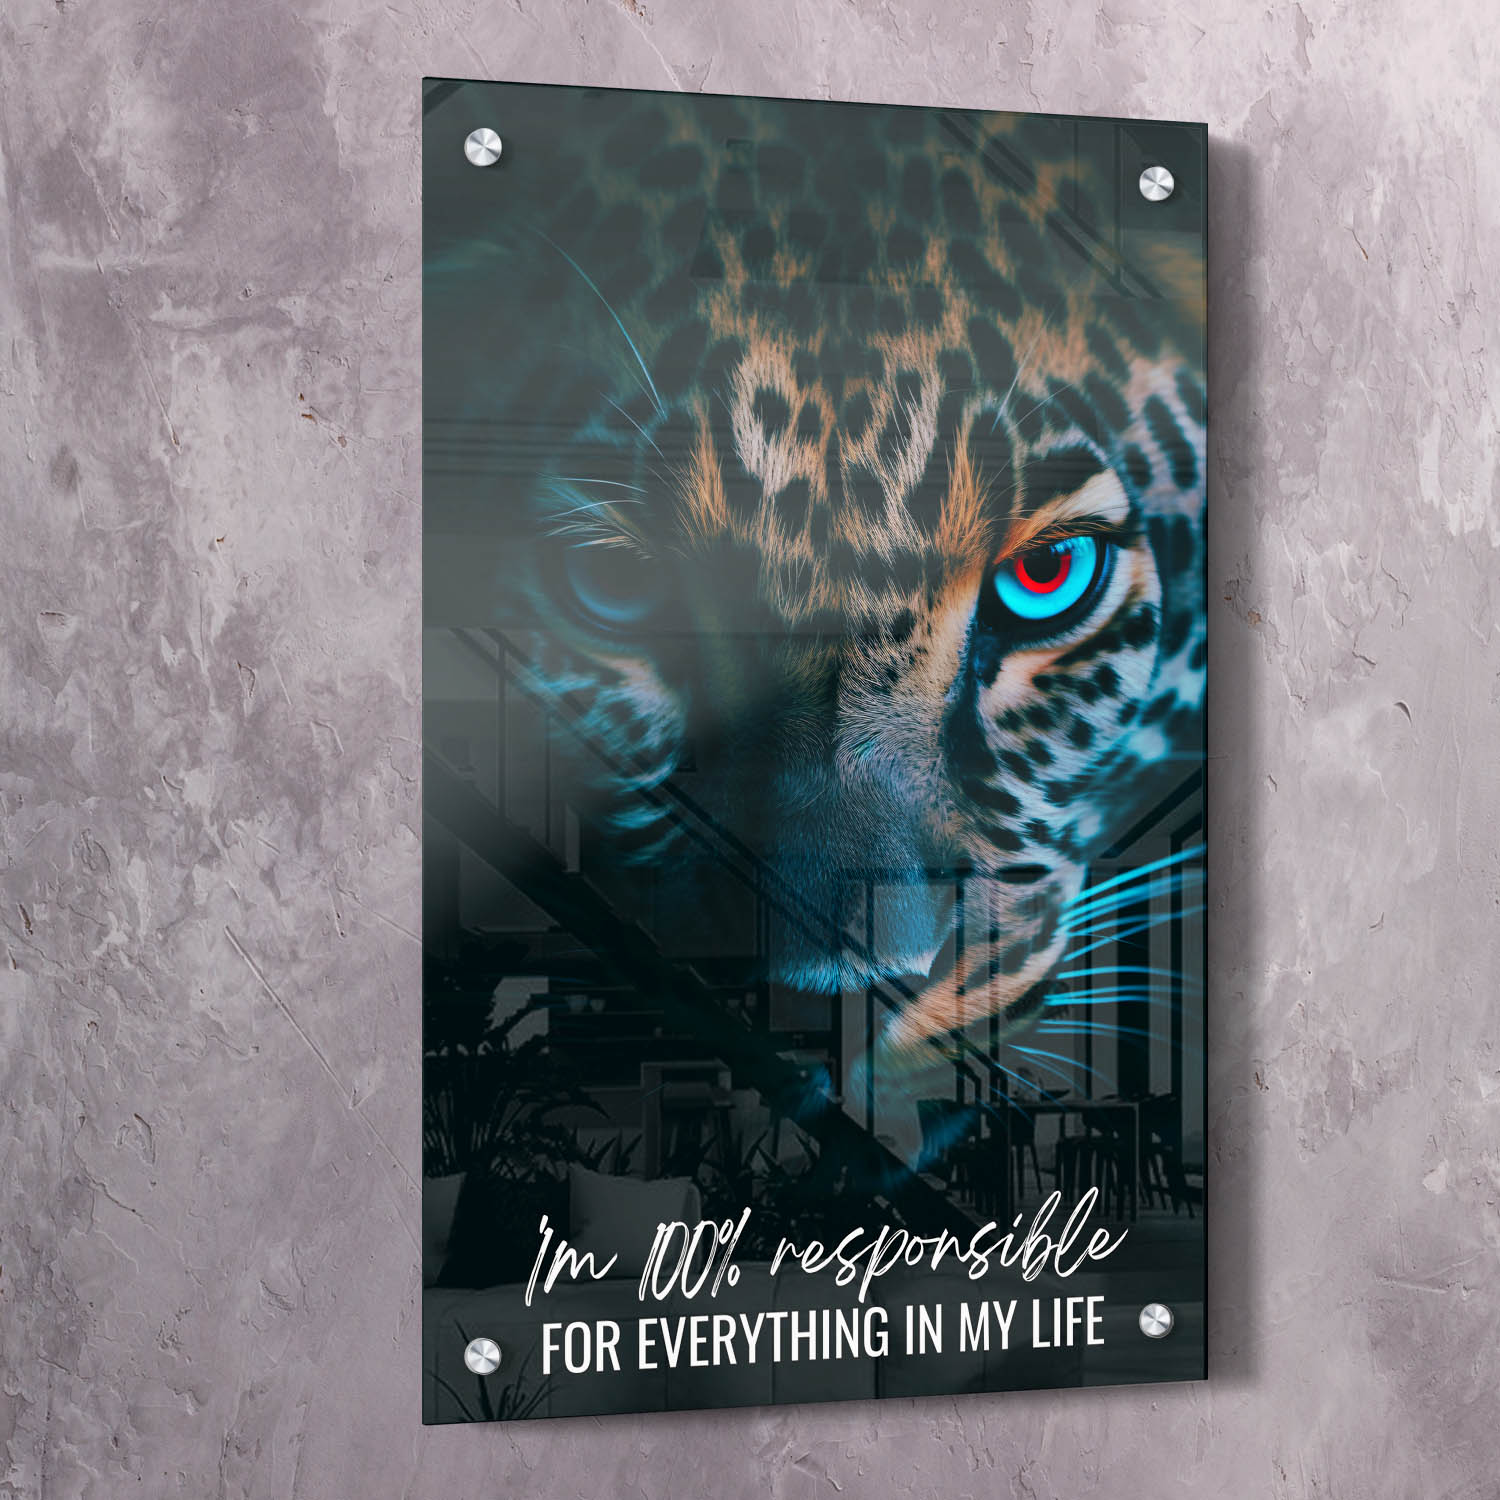 Leopard - You are 100% responsible Quote Wall Art | Inspirational Wall Art Motivational Wall Art Quotes Office Art | ImpaktMaker Exclusive Canvas Art Portrait